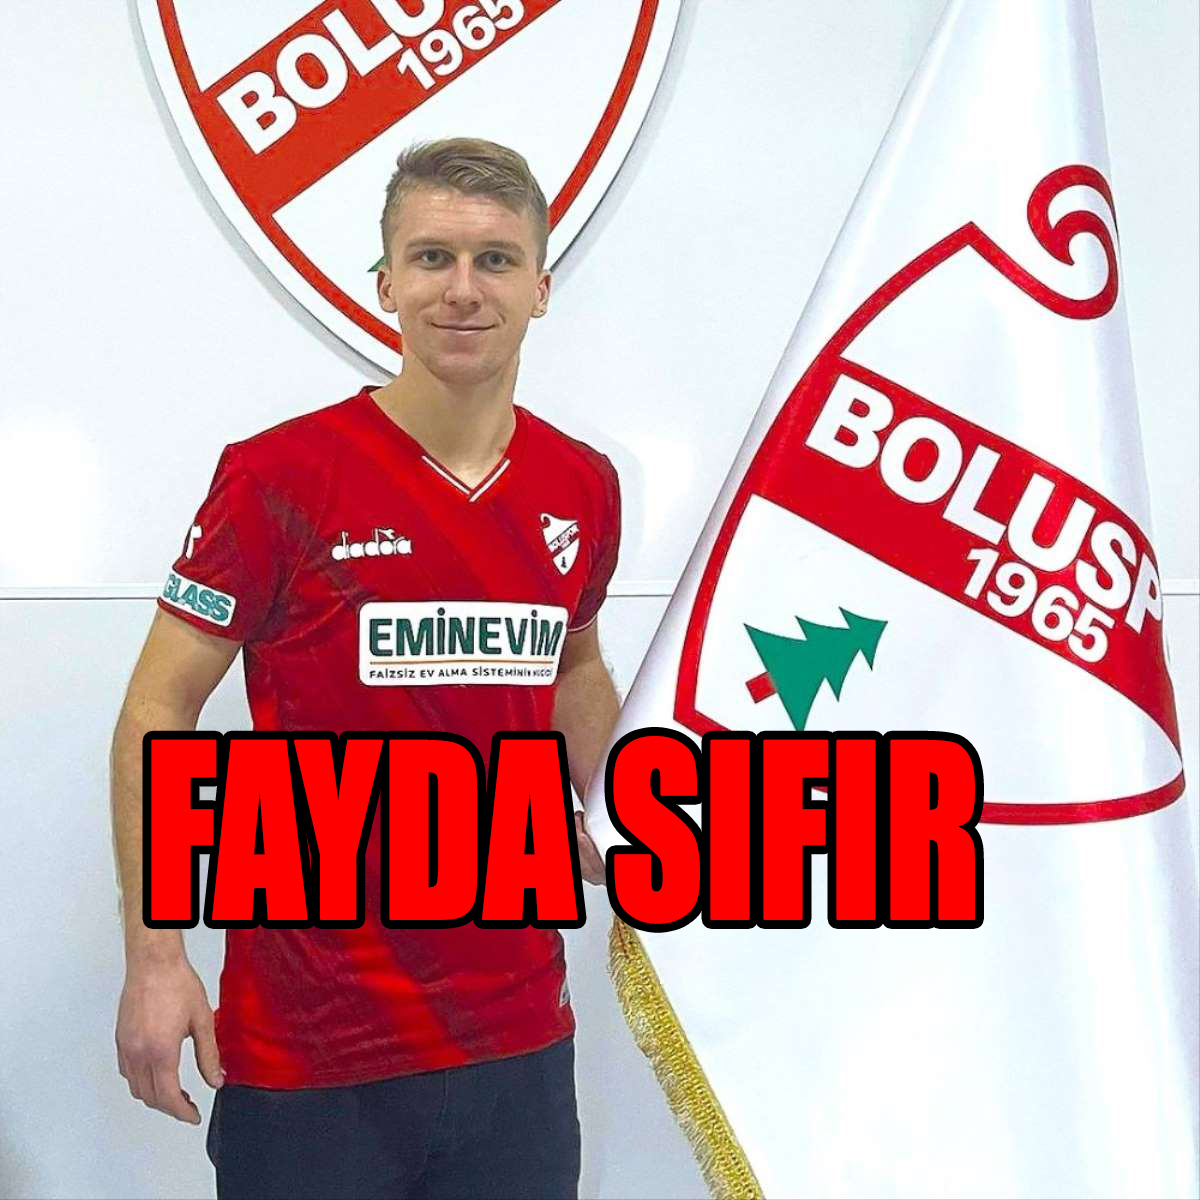 FAYDA SIFIR!